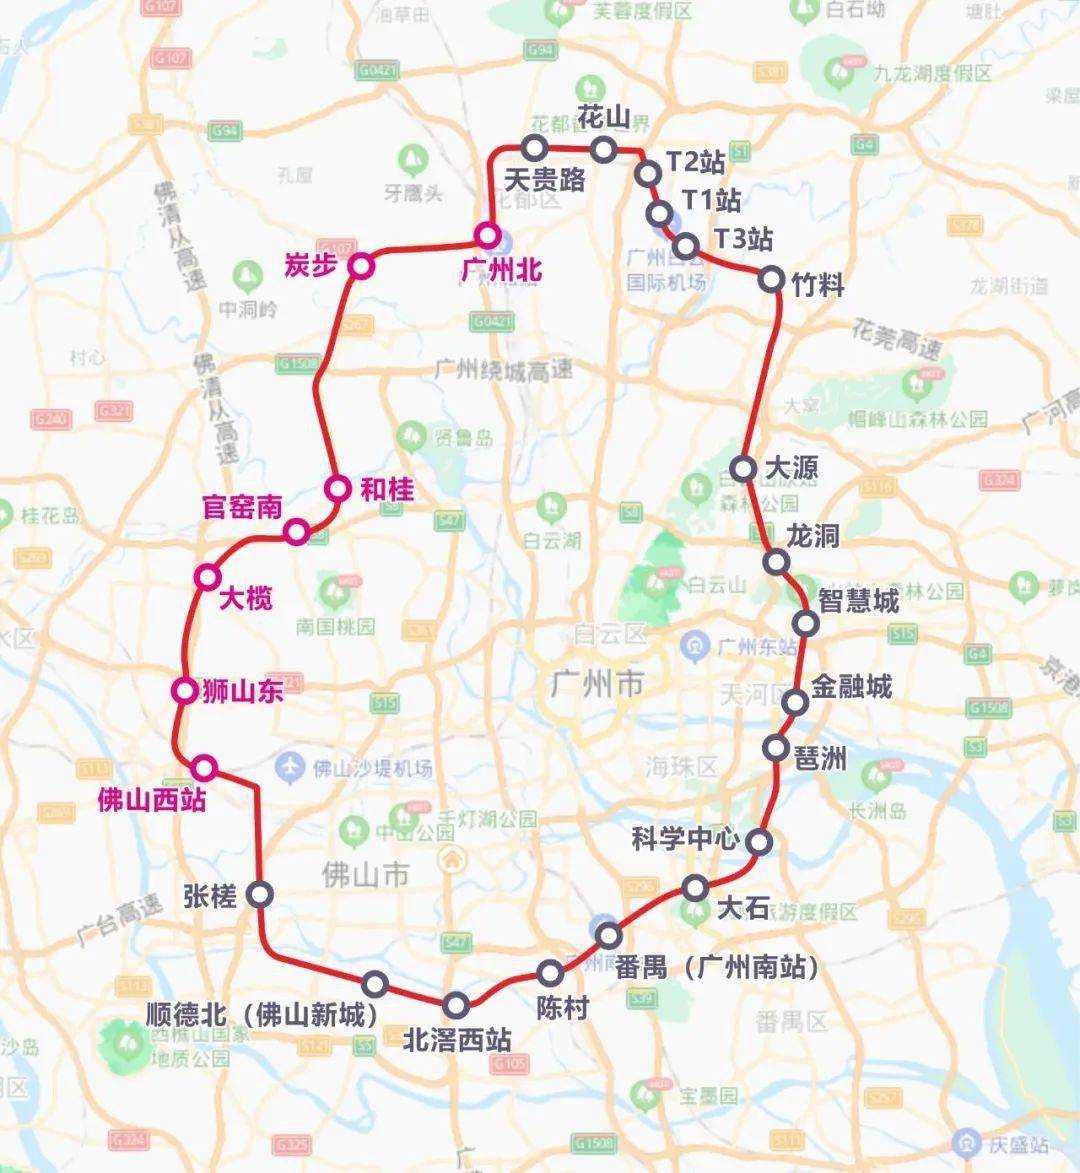 广佛环线西段呈南北走向,往南顺接在建的佛山西站至广州南站,其中